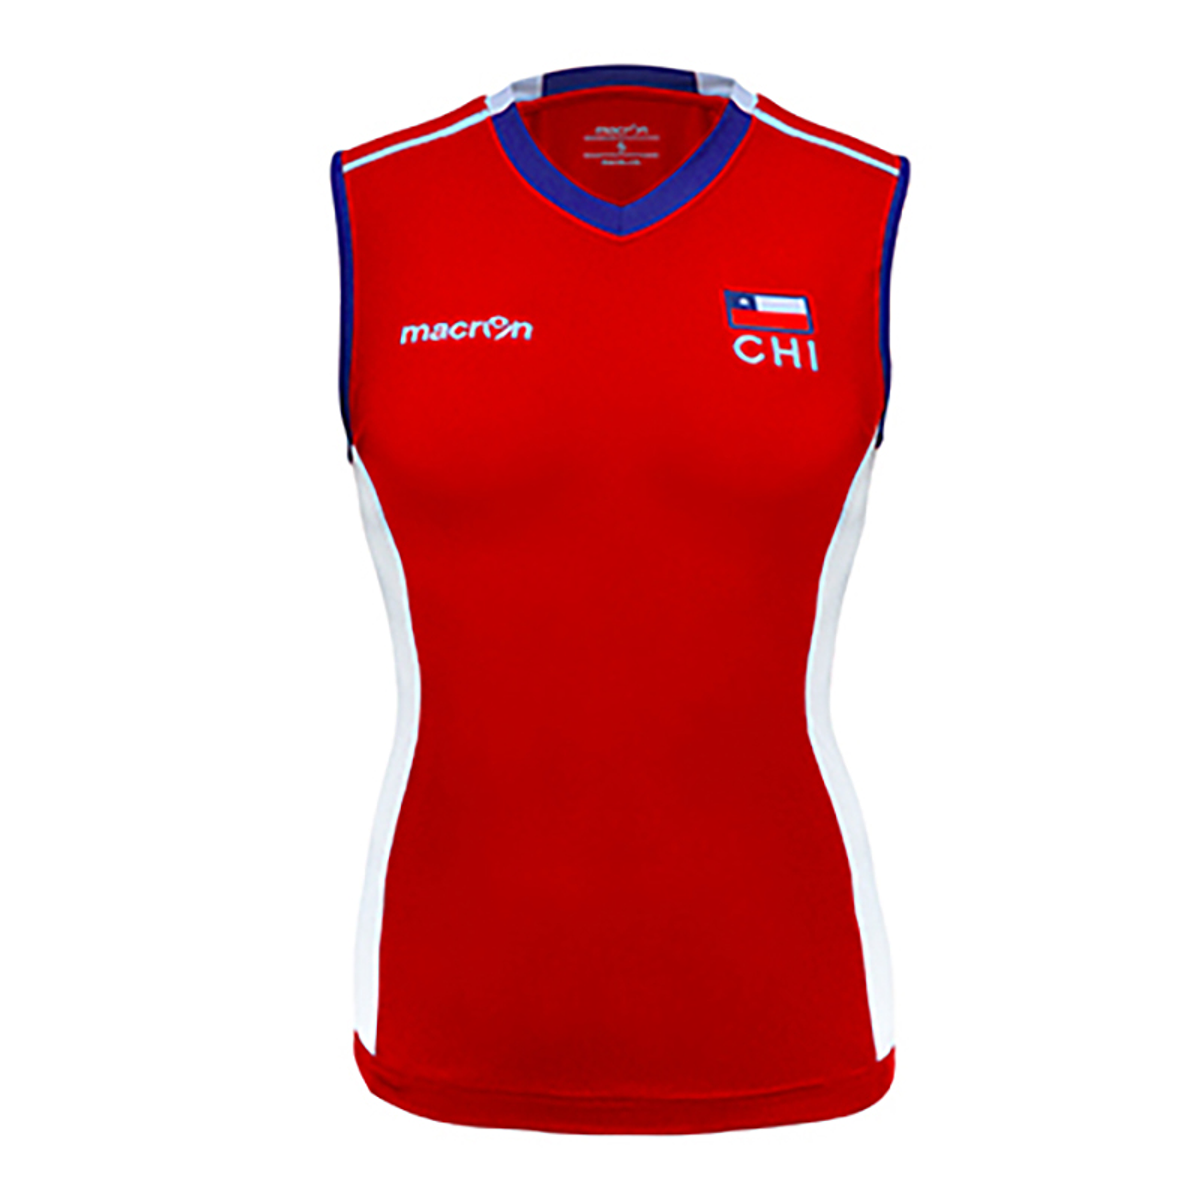 Ejecución agrio para donar Camiseta Selección Voleibol Mujer Chile Macron